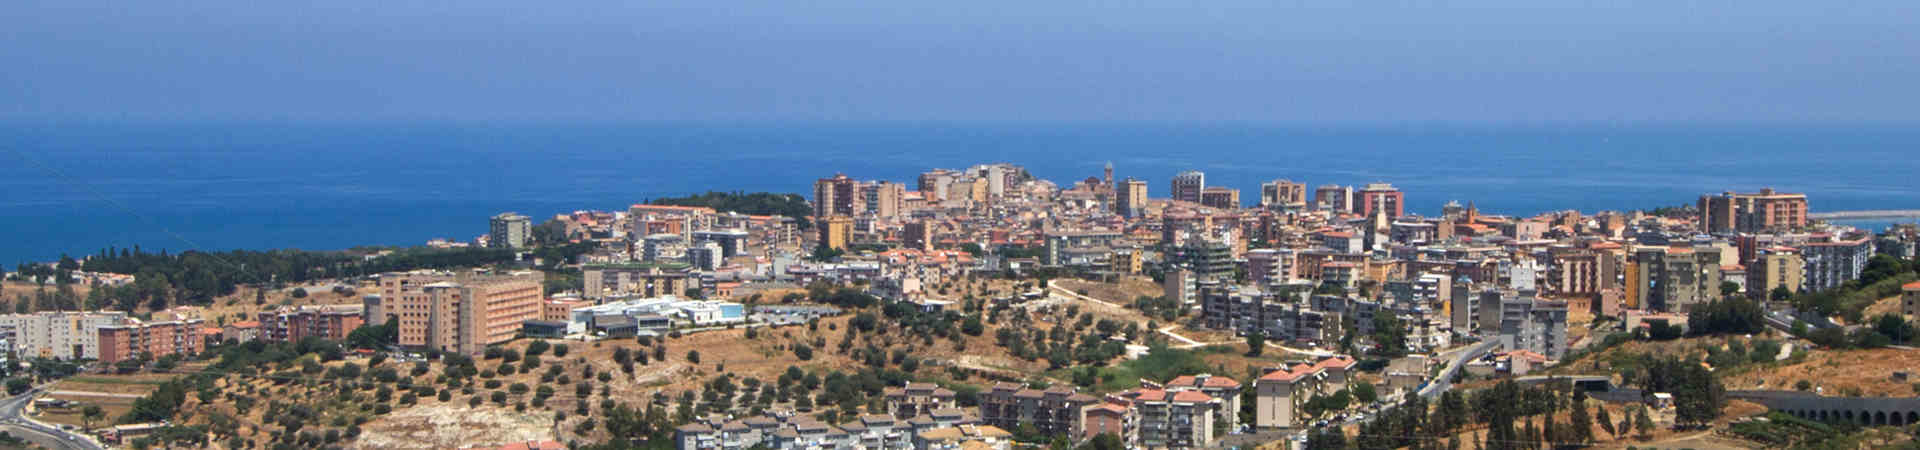 Immagine del porto di arrivo Palermo (Termini Imerese) per la rotta traghetto Napoli - Palermo (Termini Imerese)